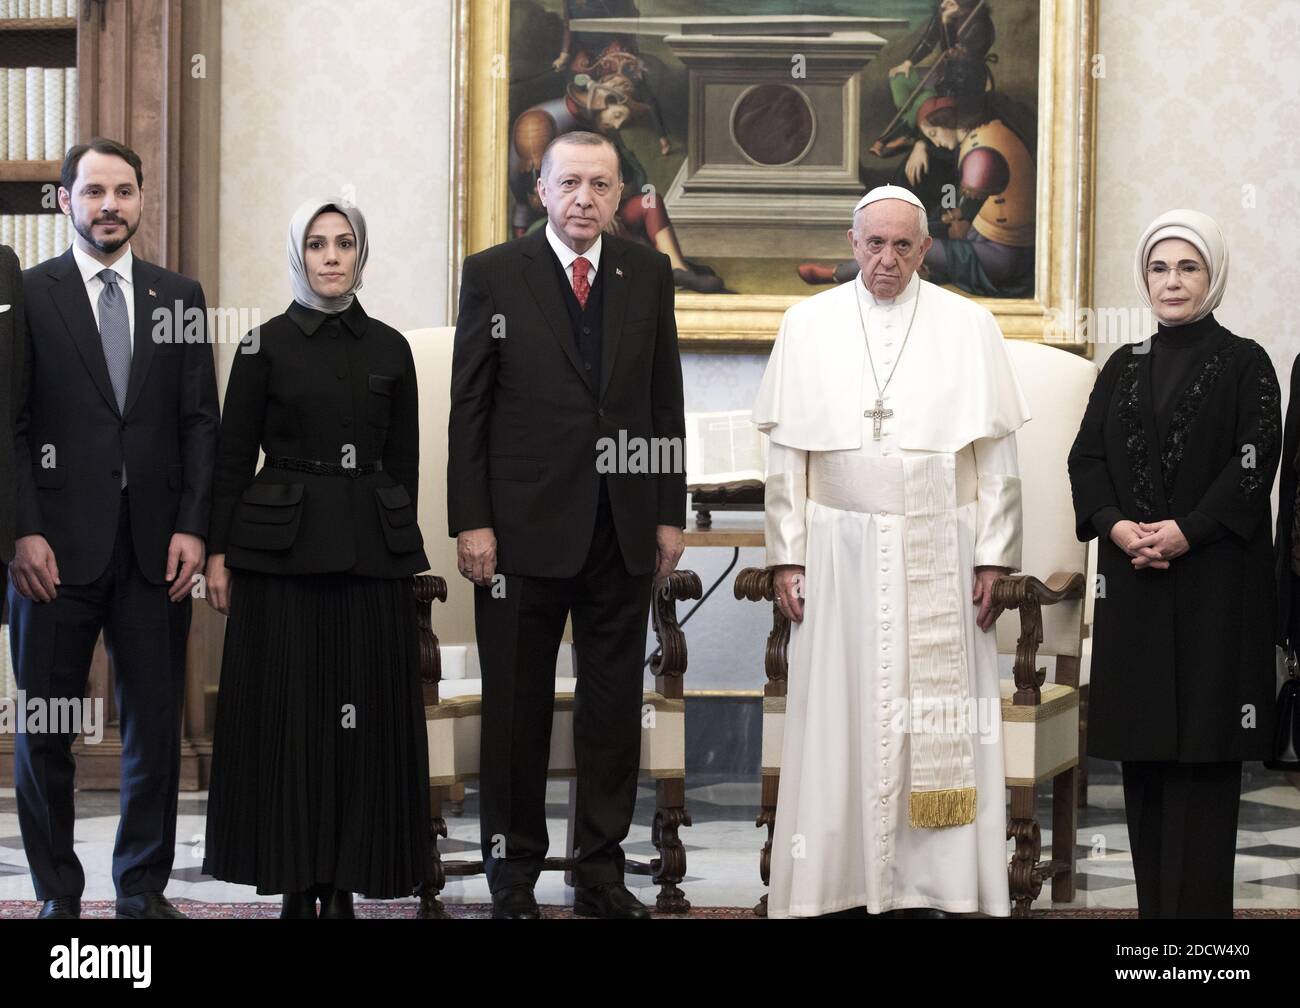 Le pape François rencontre le président turc Recep Tayyip Erdogan (3-L), son épouse Emine (2-R), le ministre turc de l'énergie et des ressources naturelles Berat Albayrak (L) et son épouse Esra (2-L) au Vatican le 5 février 2018. Ils ont parlé de la guerre en Syrie, du statut de Jérusalem et de la lutte contre le terrorisme. Erdogan est le premier président turc à visiter le Vatican depuis près de soixante ans. François l'a rencontré lors de son voyage à Istanbul en 2014. Photo par ABACAPRESS.COM Banque D'Images